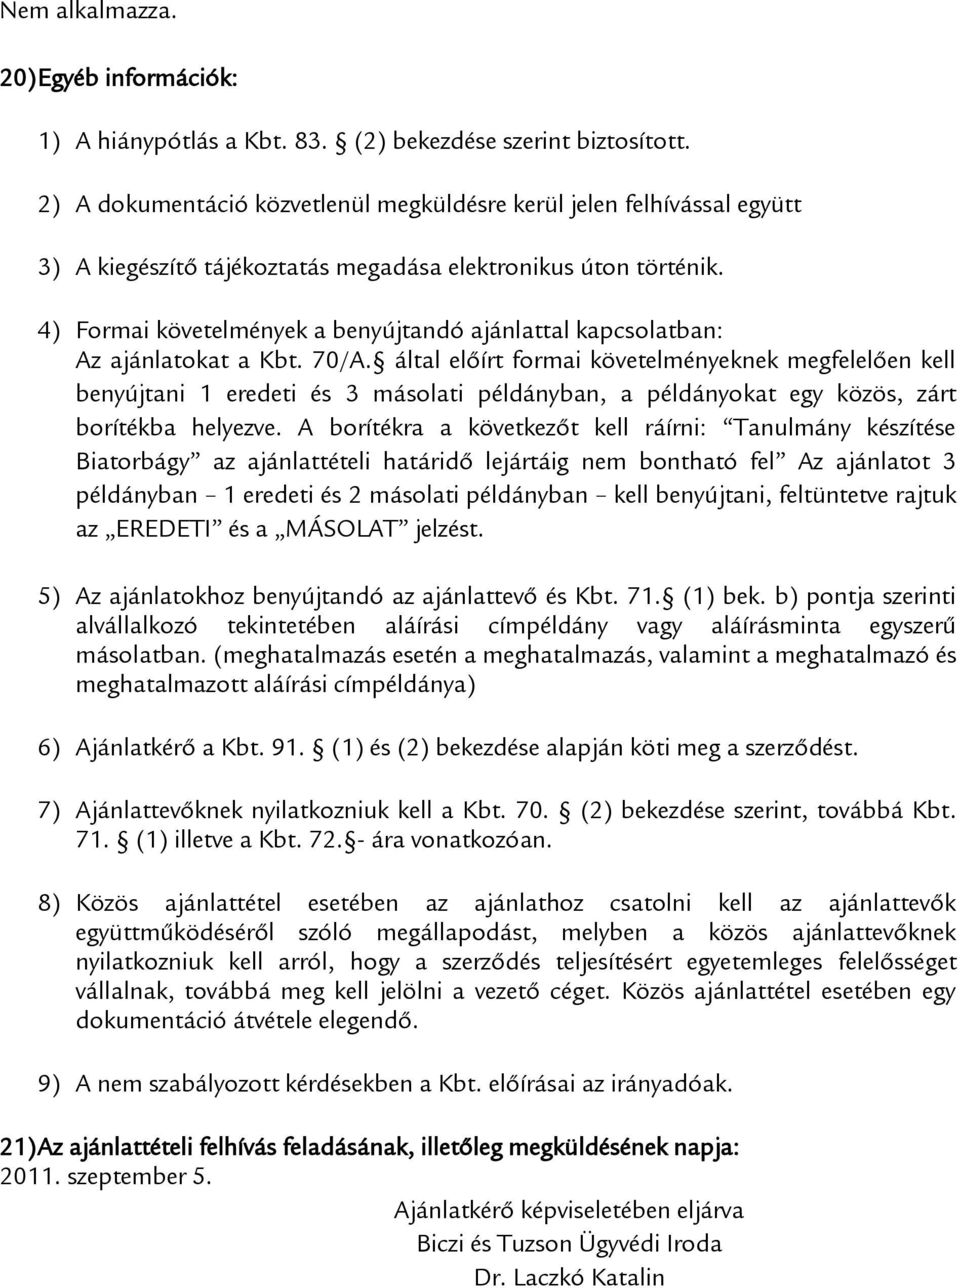 4) Formai követelmények a benyújtandó ajánlattal kapcsolatban: Az ajánlatokat a Kbt. 70/A.